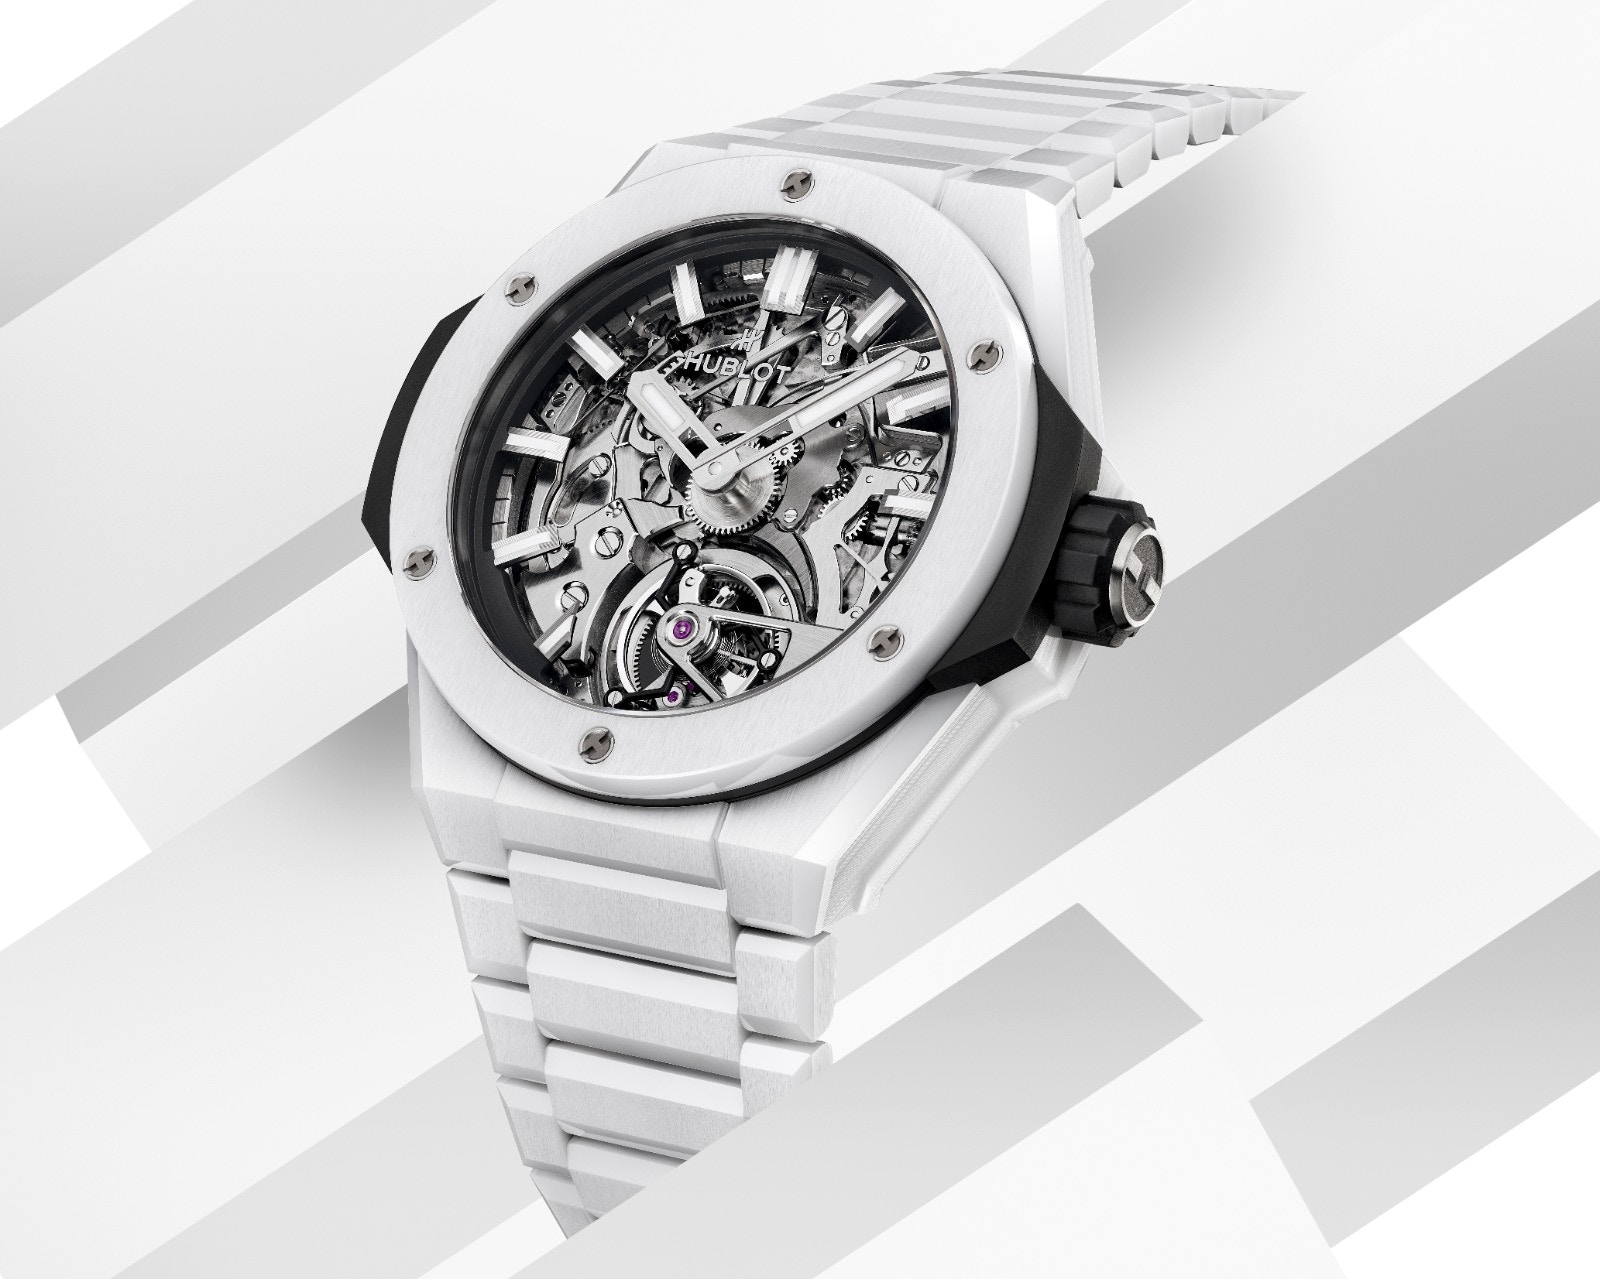 HUBLOT極致工藝表現一體式陶瓷陀飛輪三問腕錶技術要求極高